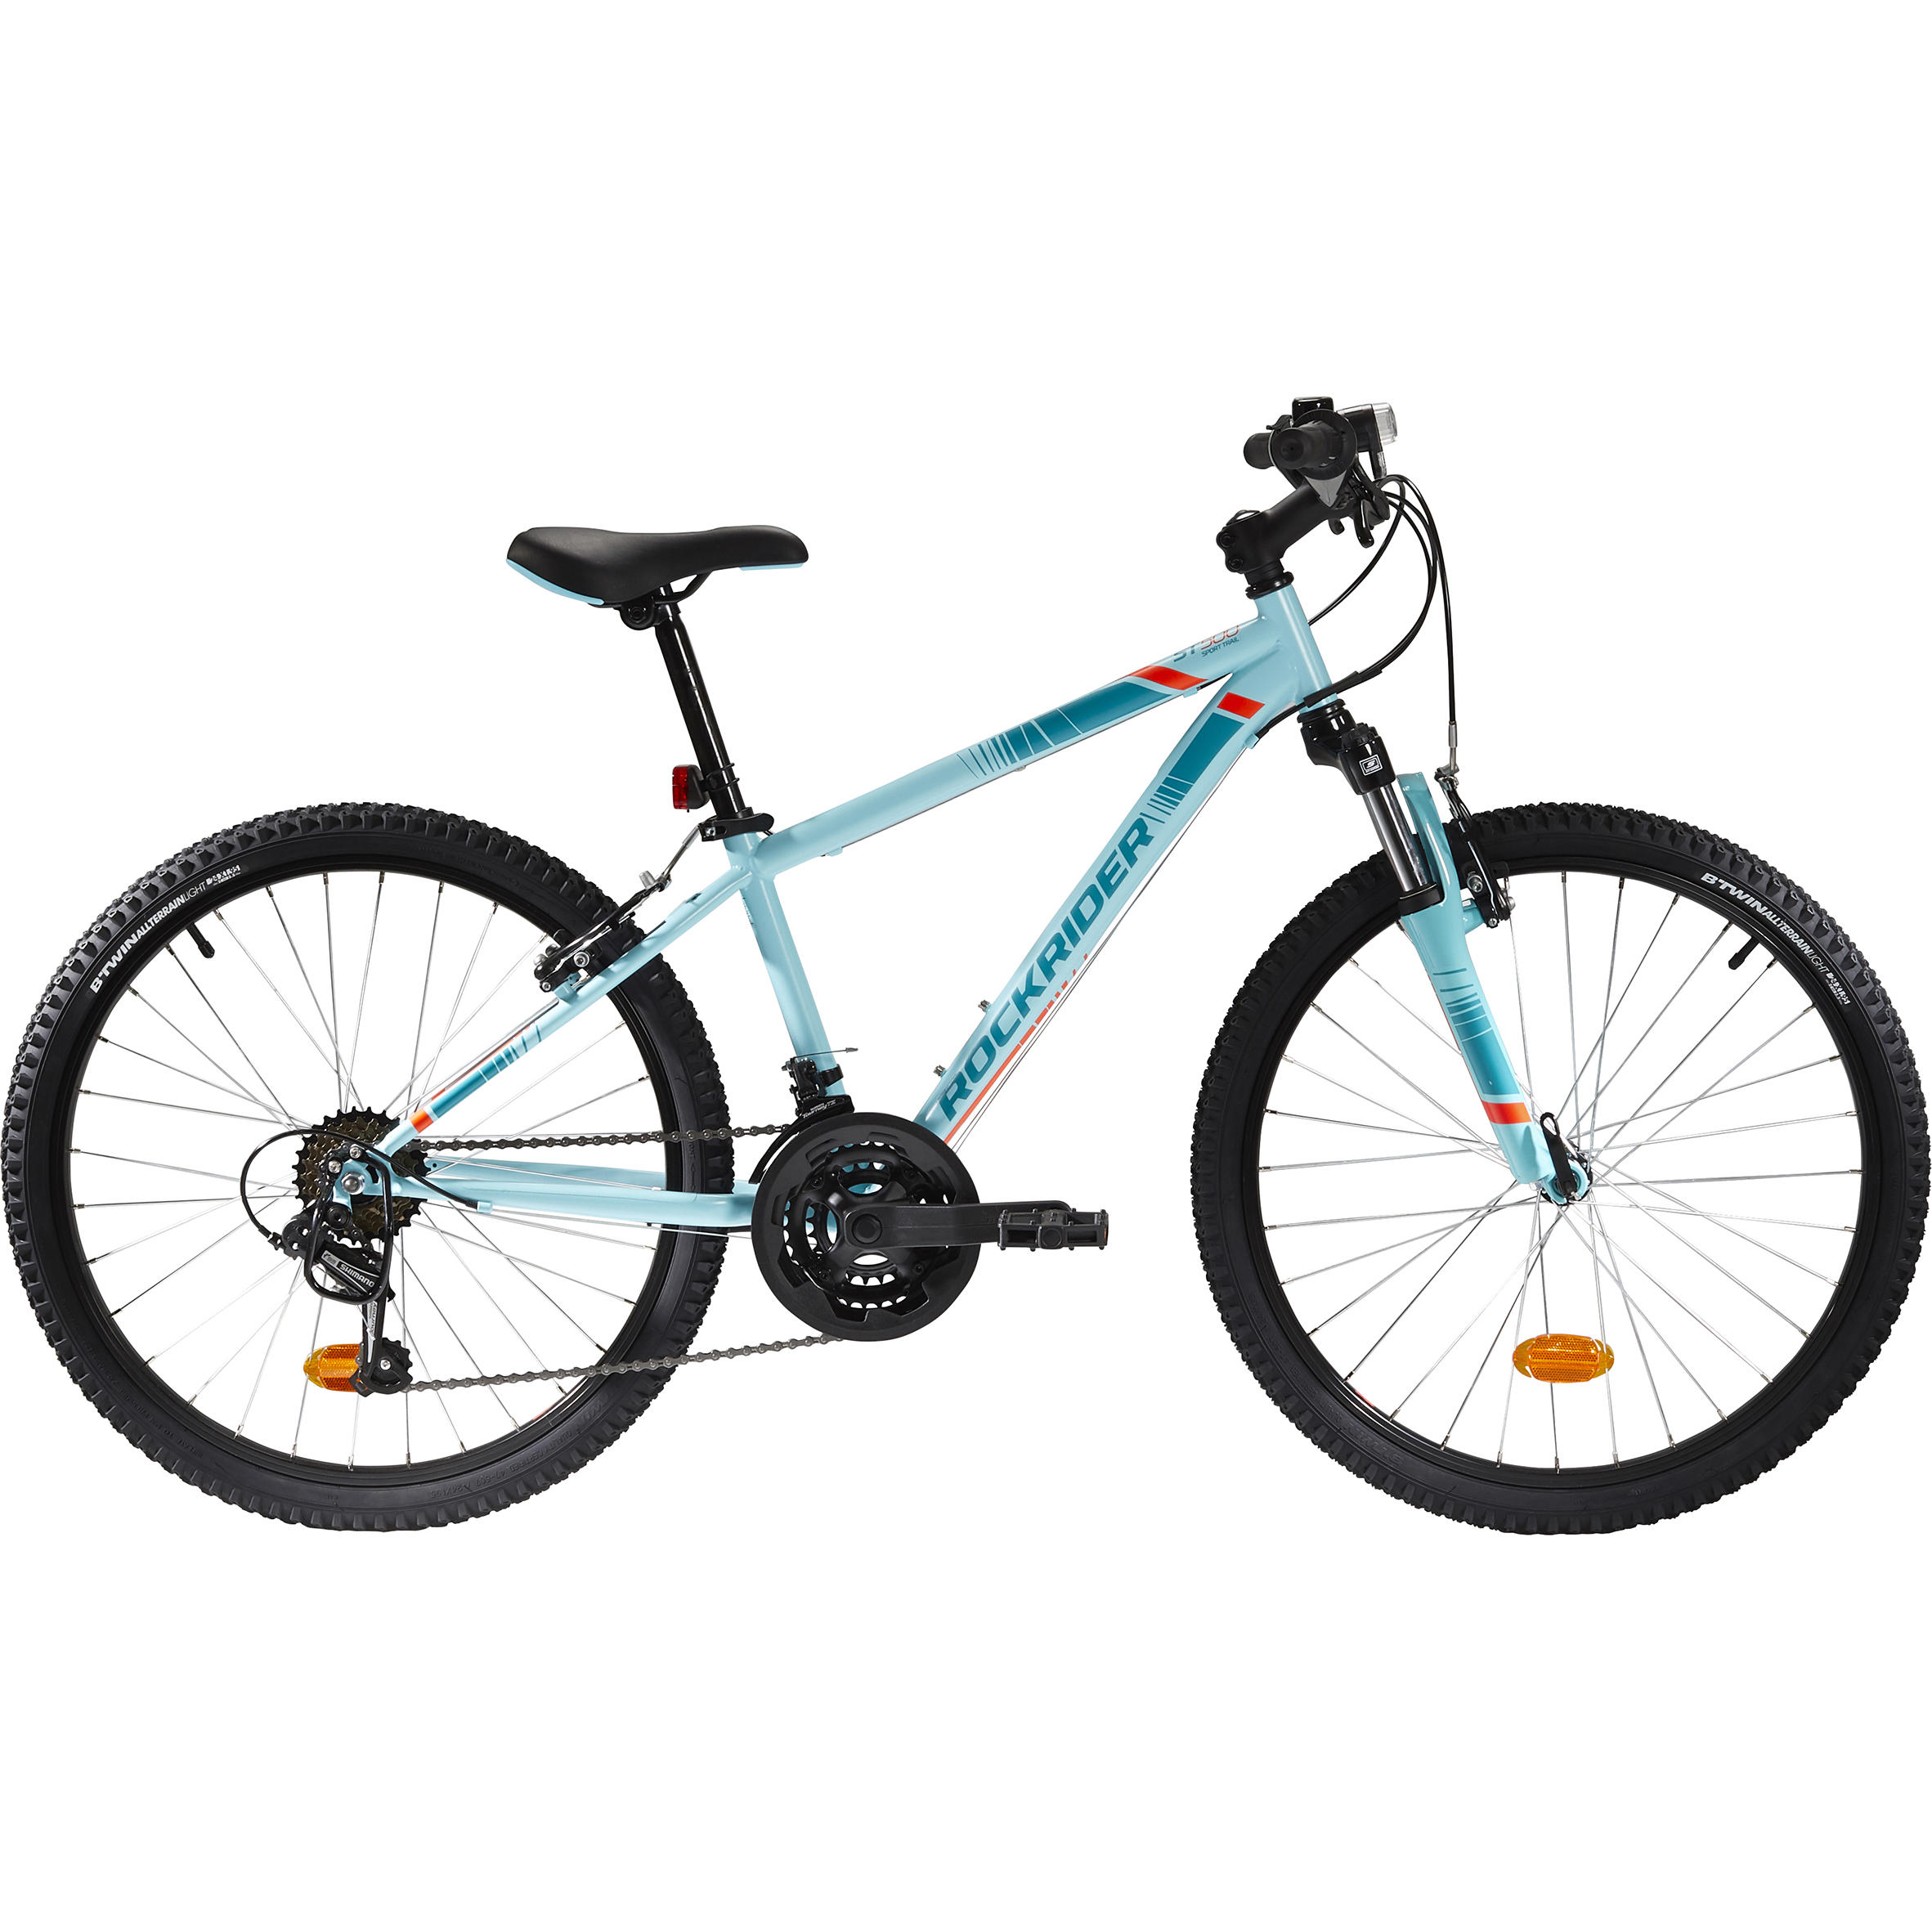 Bicicletă MTB Rockrider ST500 24″ Albastru Copii 9-12 ani La Oferta Online BTWIN imagine La Oferta Online